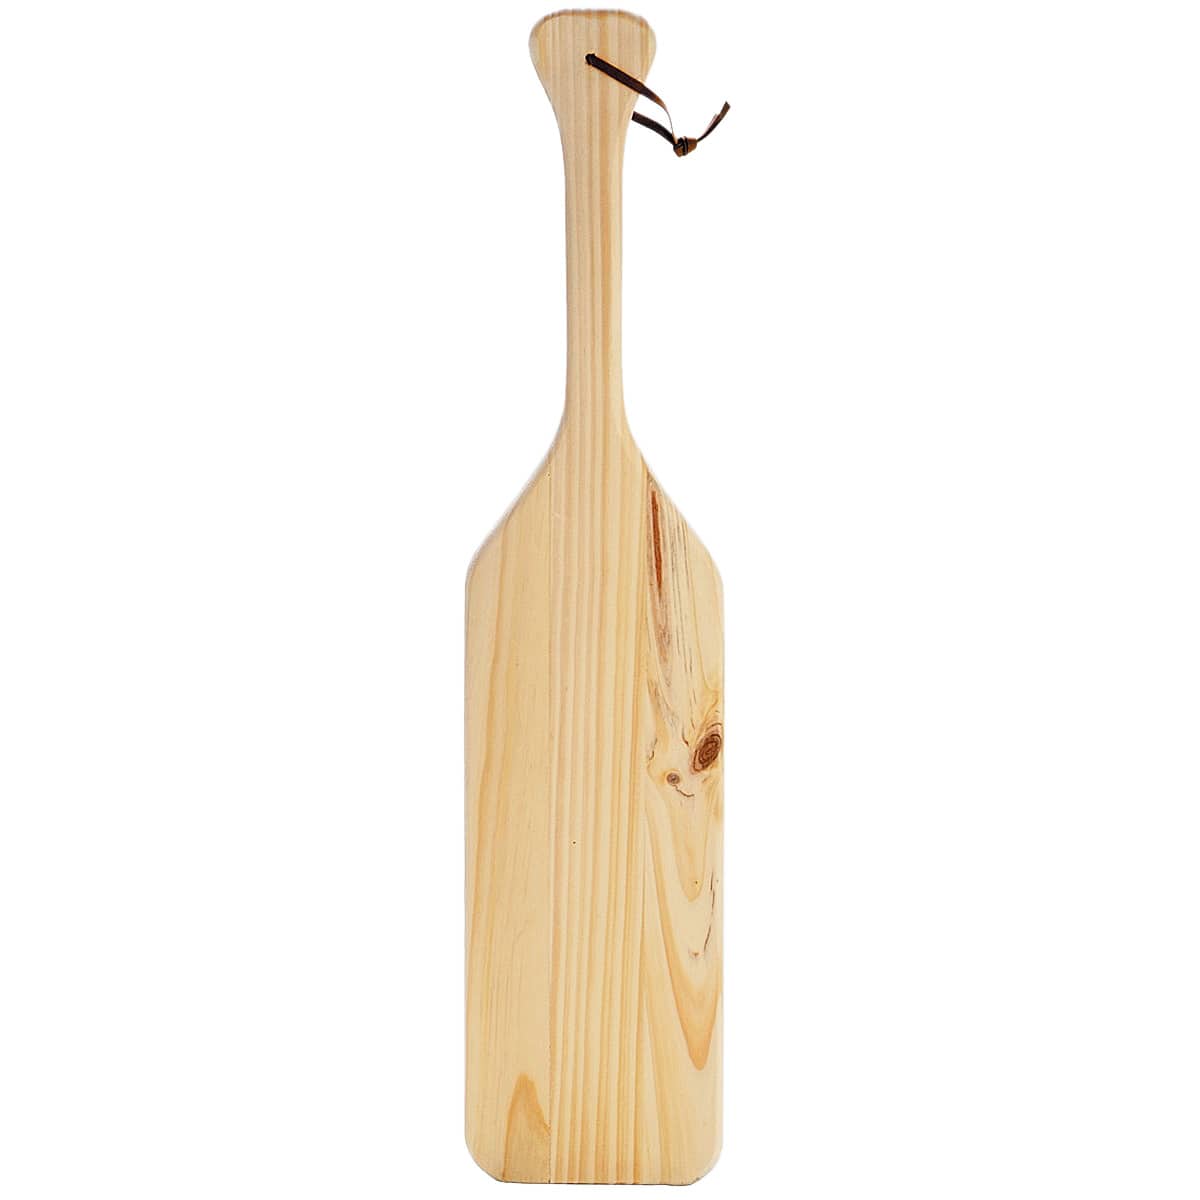 Darice Wood Paddle, 23.87 x 5.75